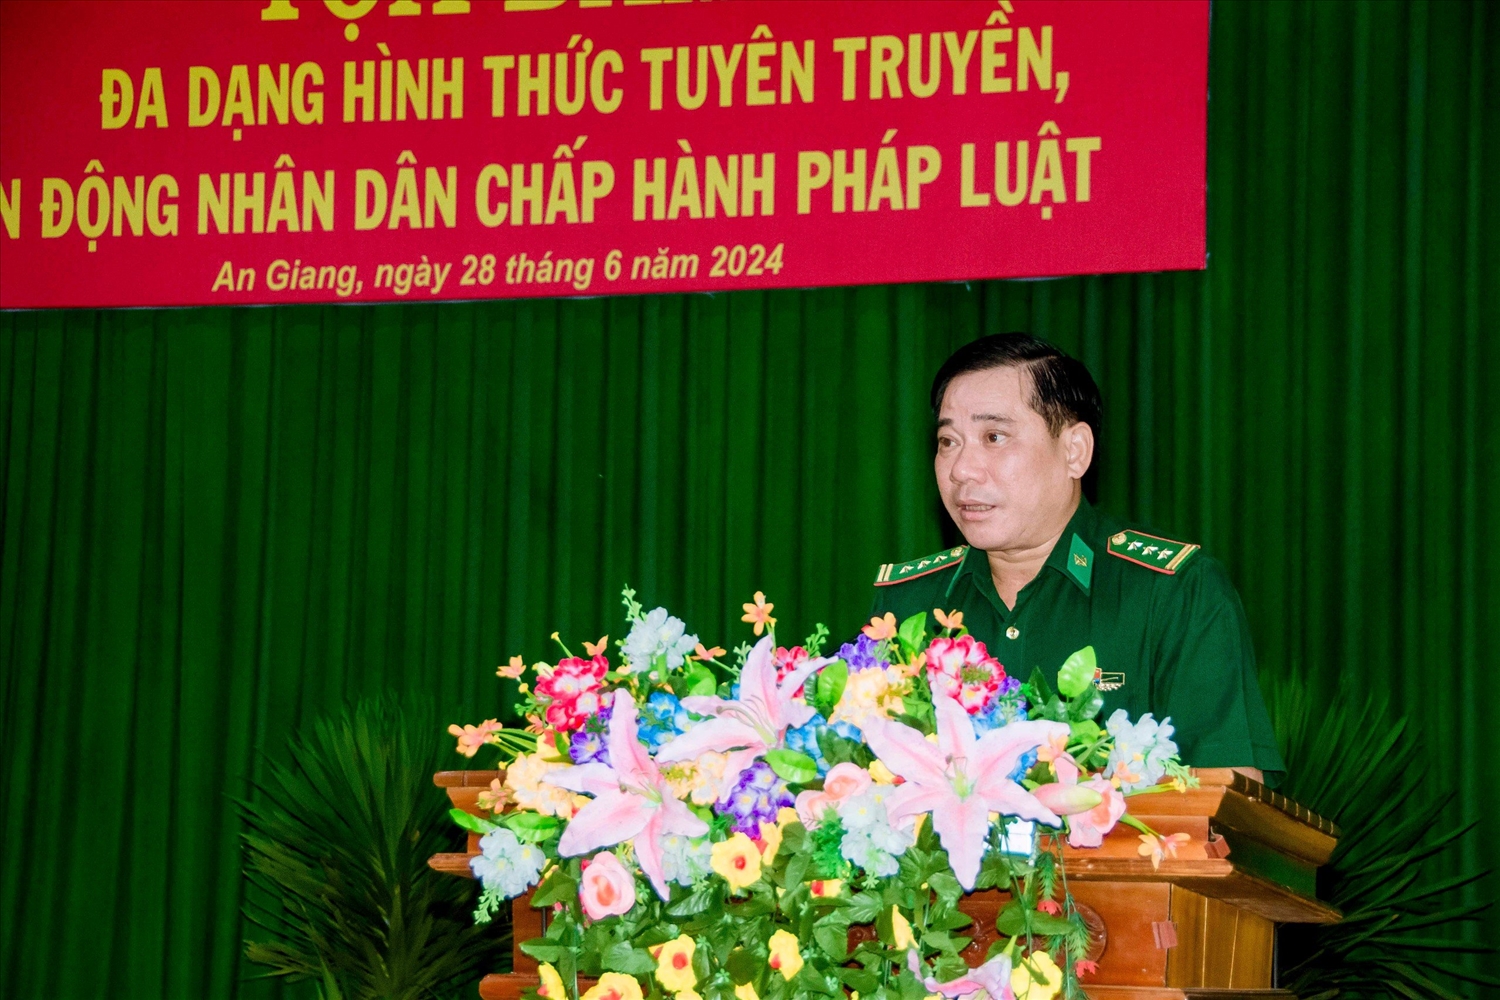 Thượng tá Nguyễn Văn Hiệp, Bí thư Đảng ủy, Chính ủy BĐBP tỉnh An Giang phát biểu tại buổi toạ đàm 